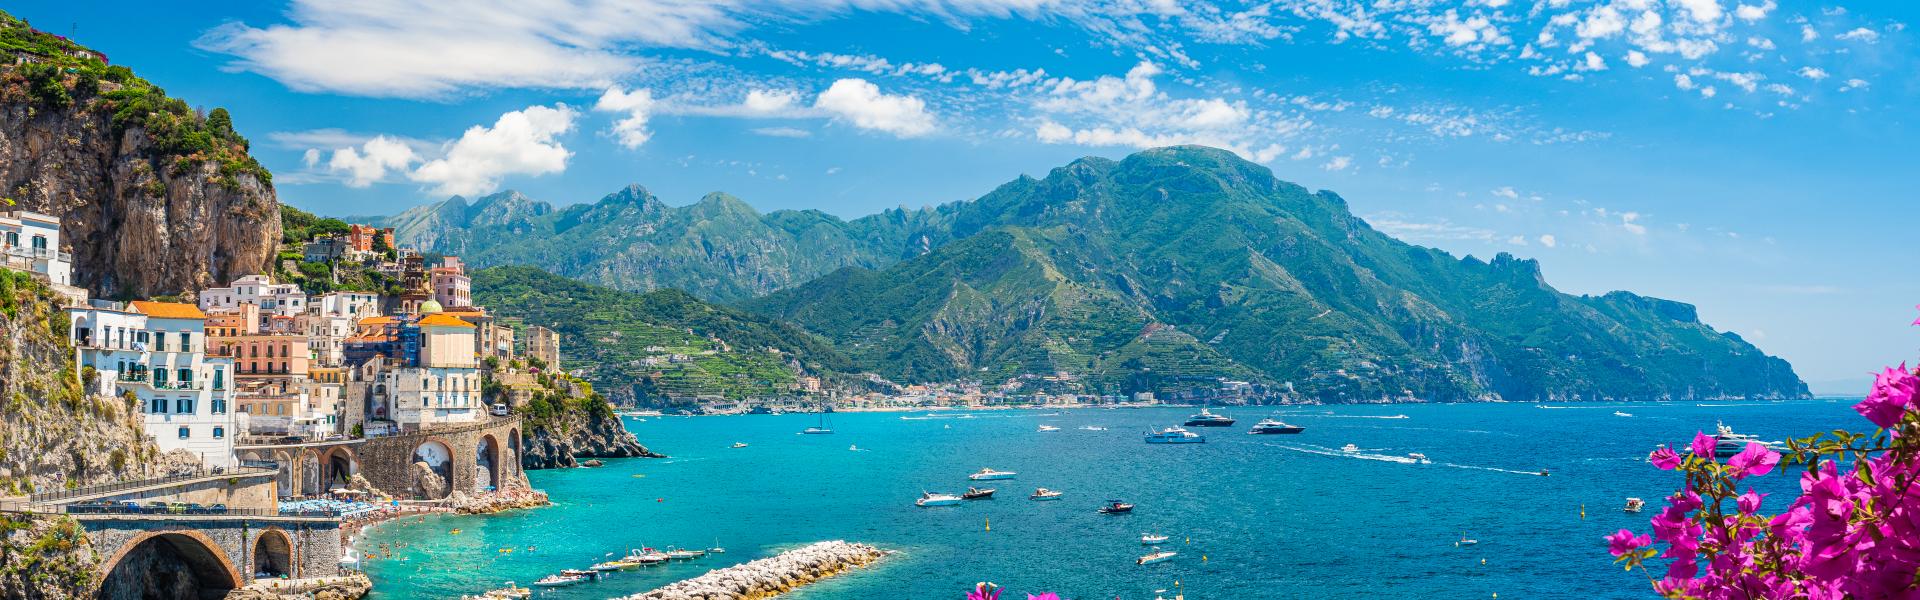 A Scenic View of Italian Riviera